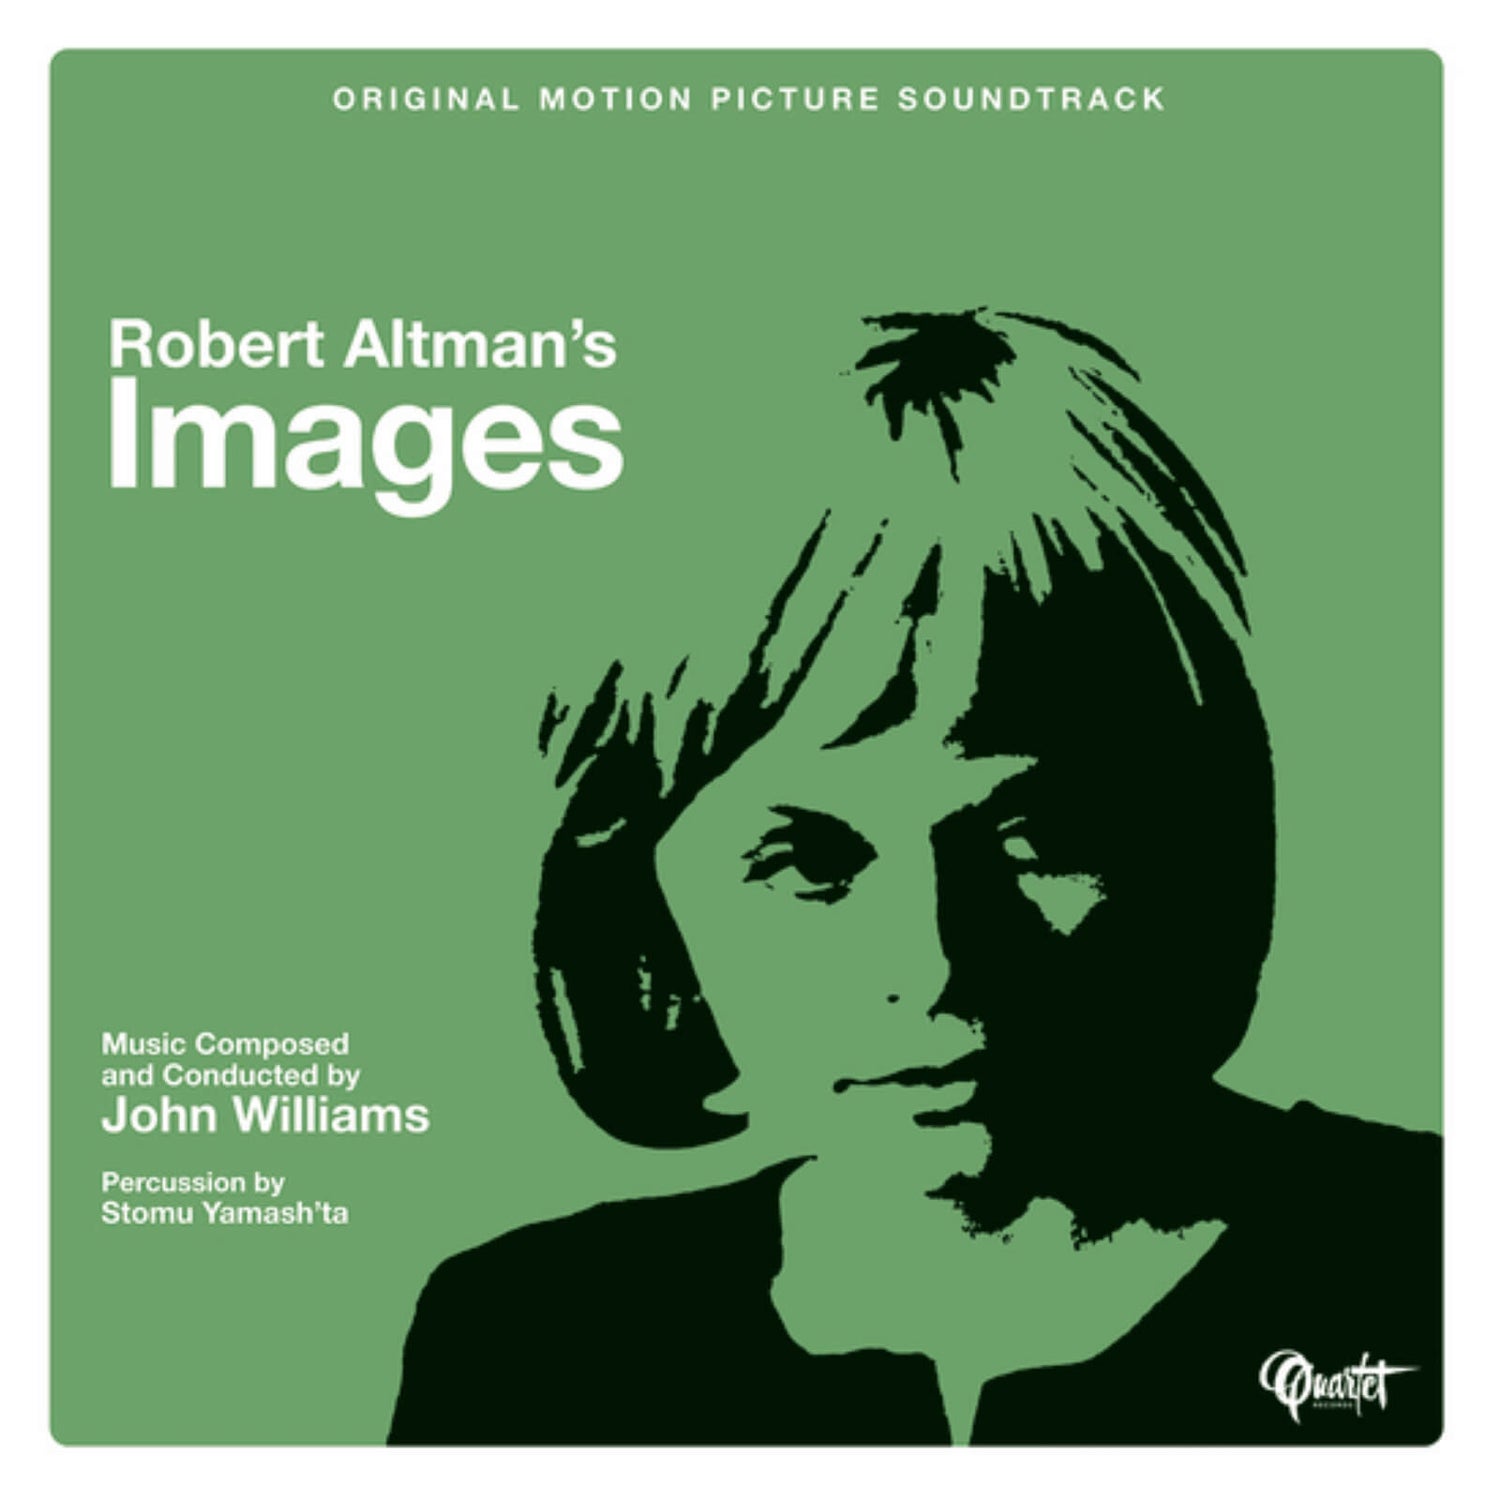 Robert Altman's Images (Original Motion Picture Soundtrack) 180g Vinyl